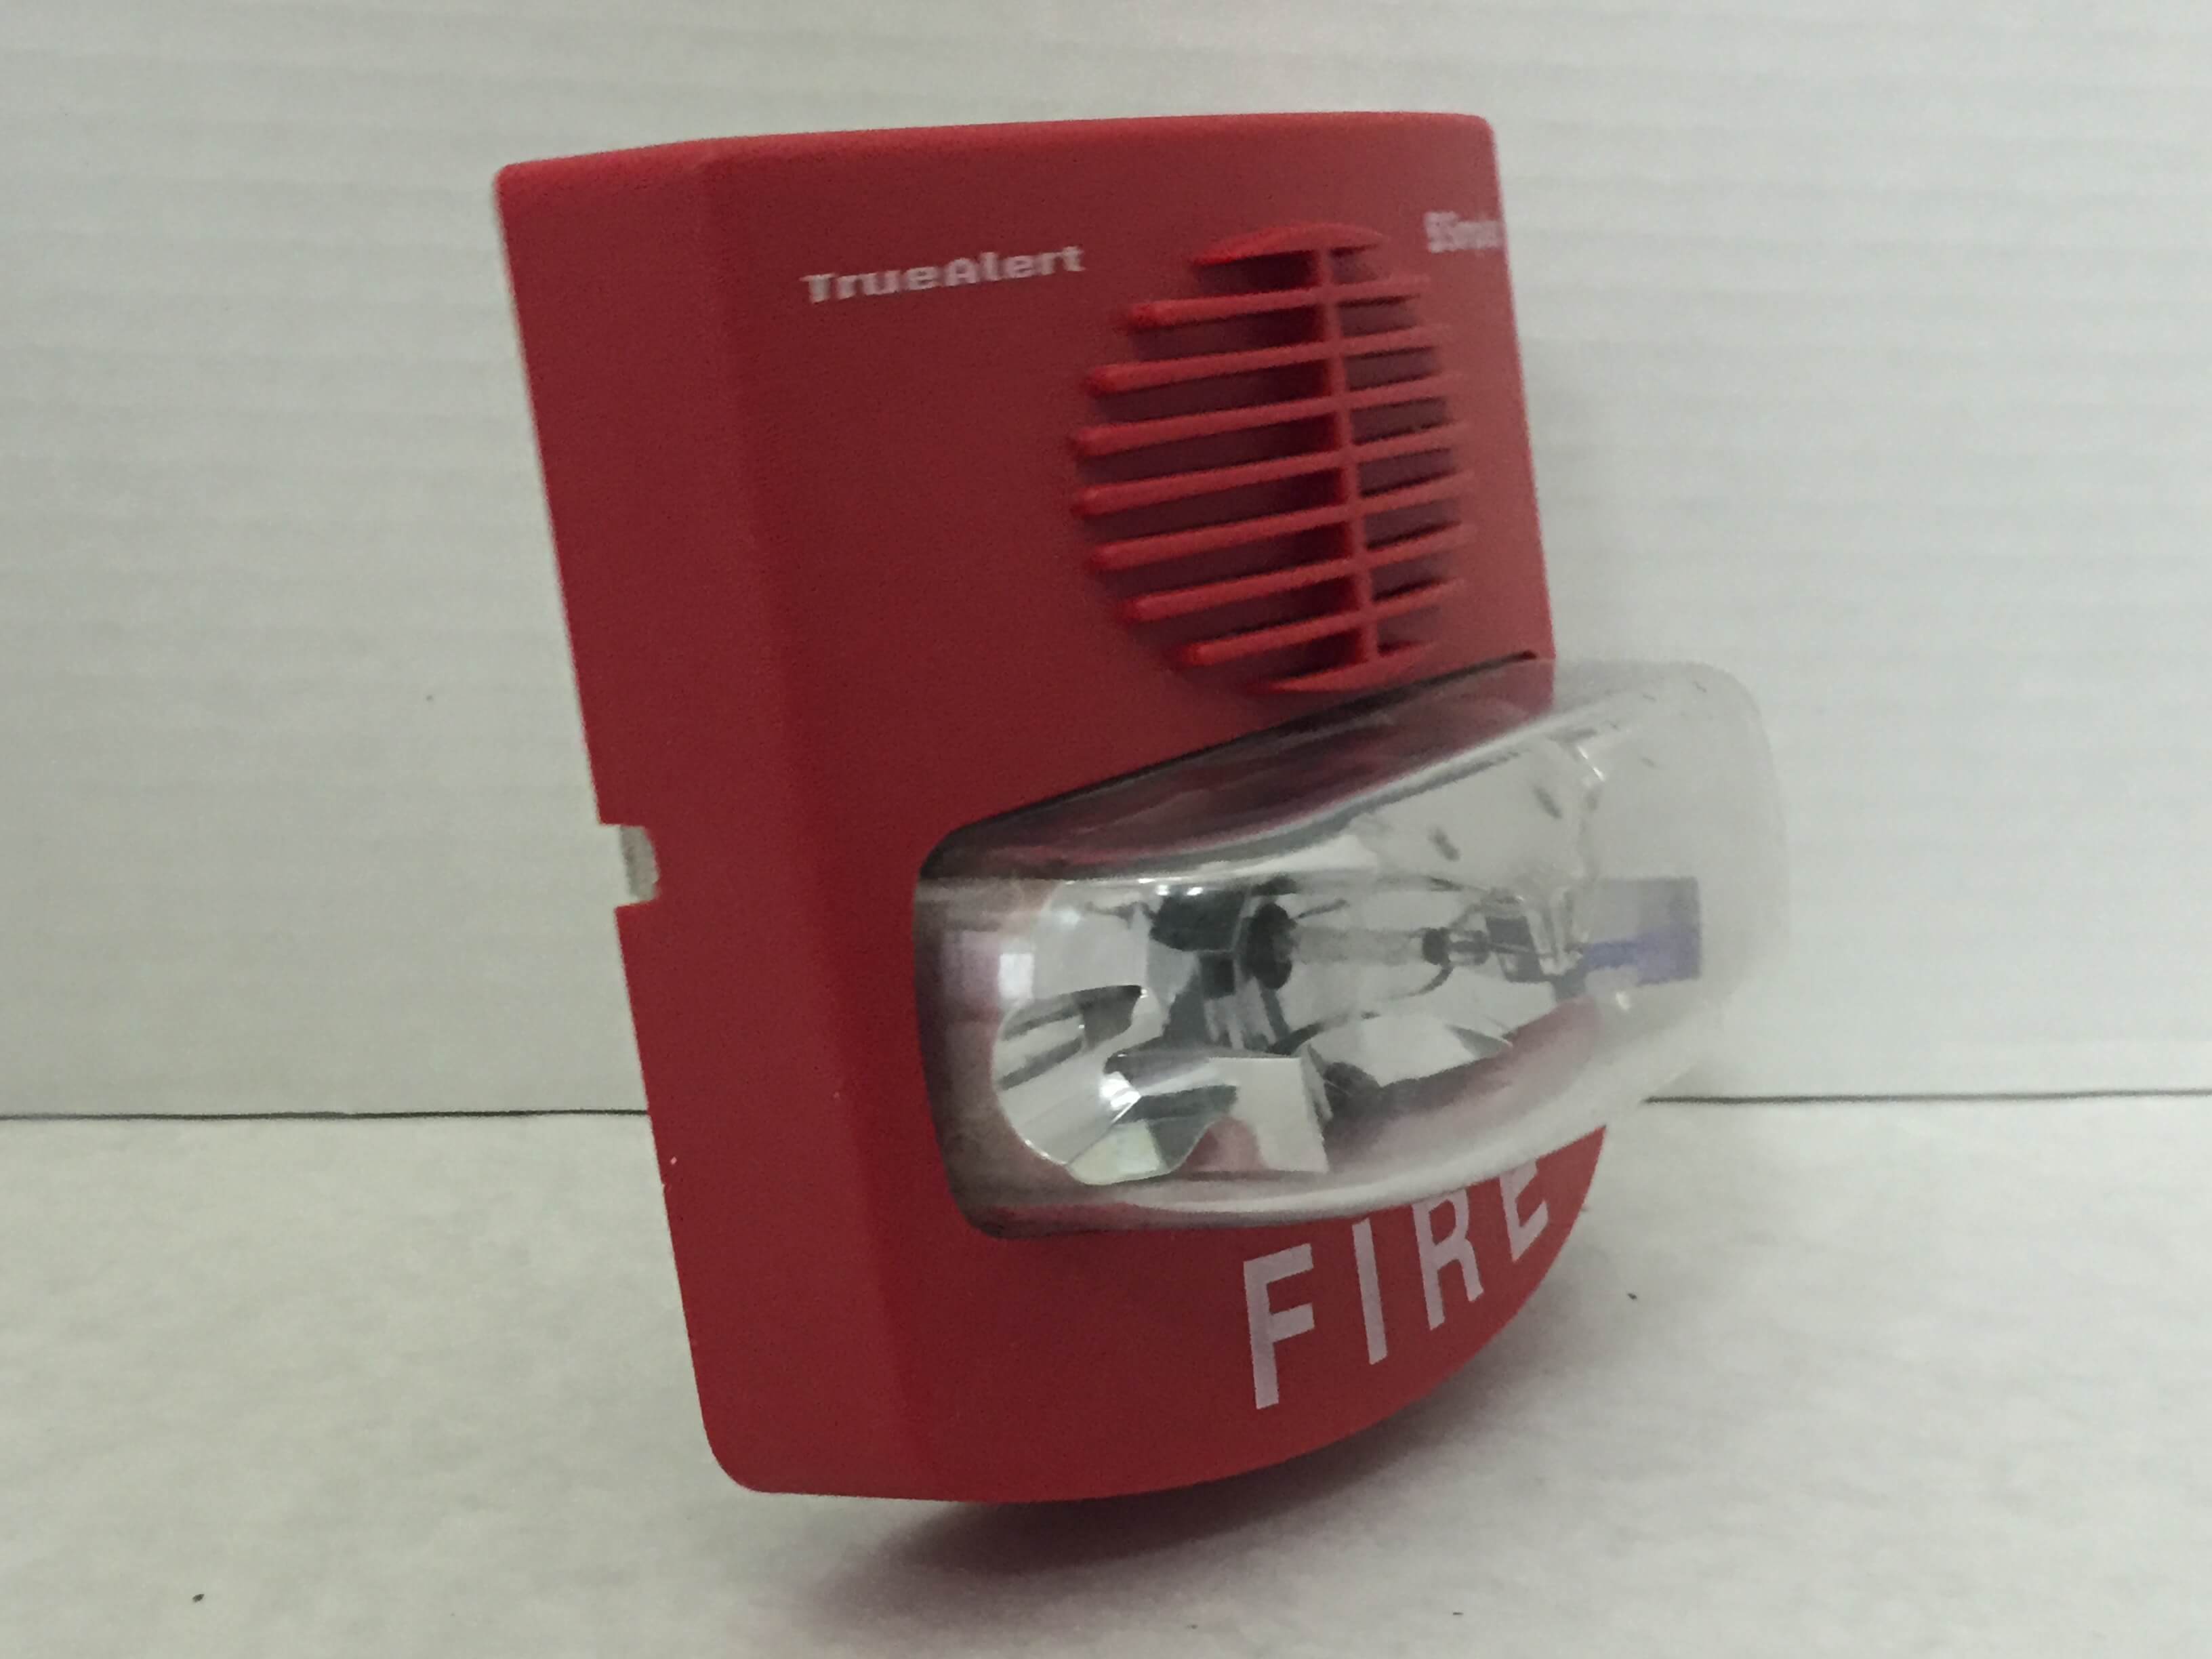 Simplex 4903-9425 - FireAlarms.tv - jjinc24/U8oL0's Fire Alarm ...